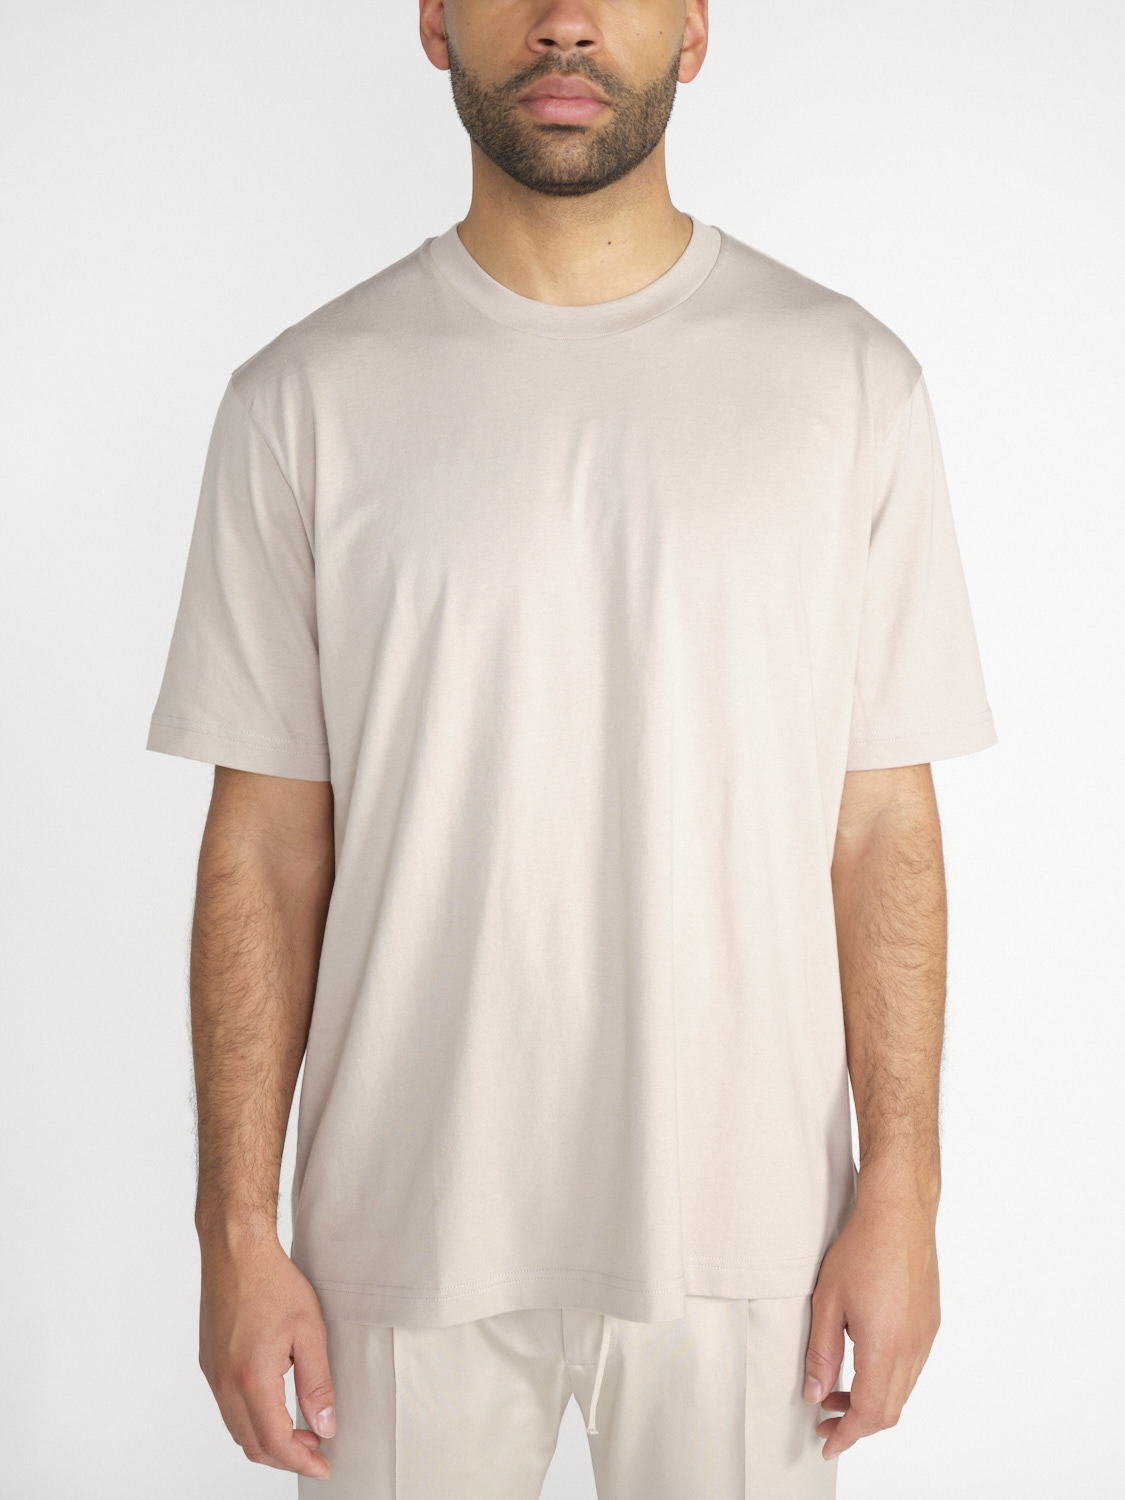 Stefan Brandt Eli 30 – cotton shirt  beige XXL